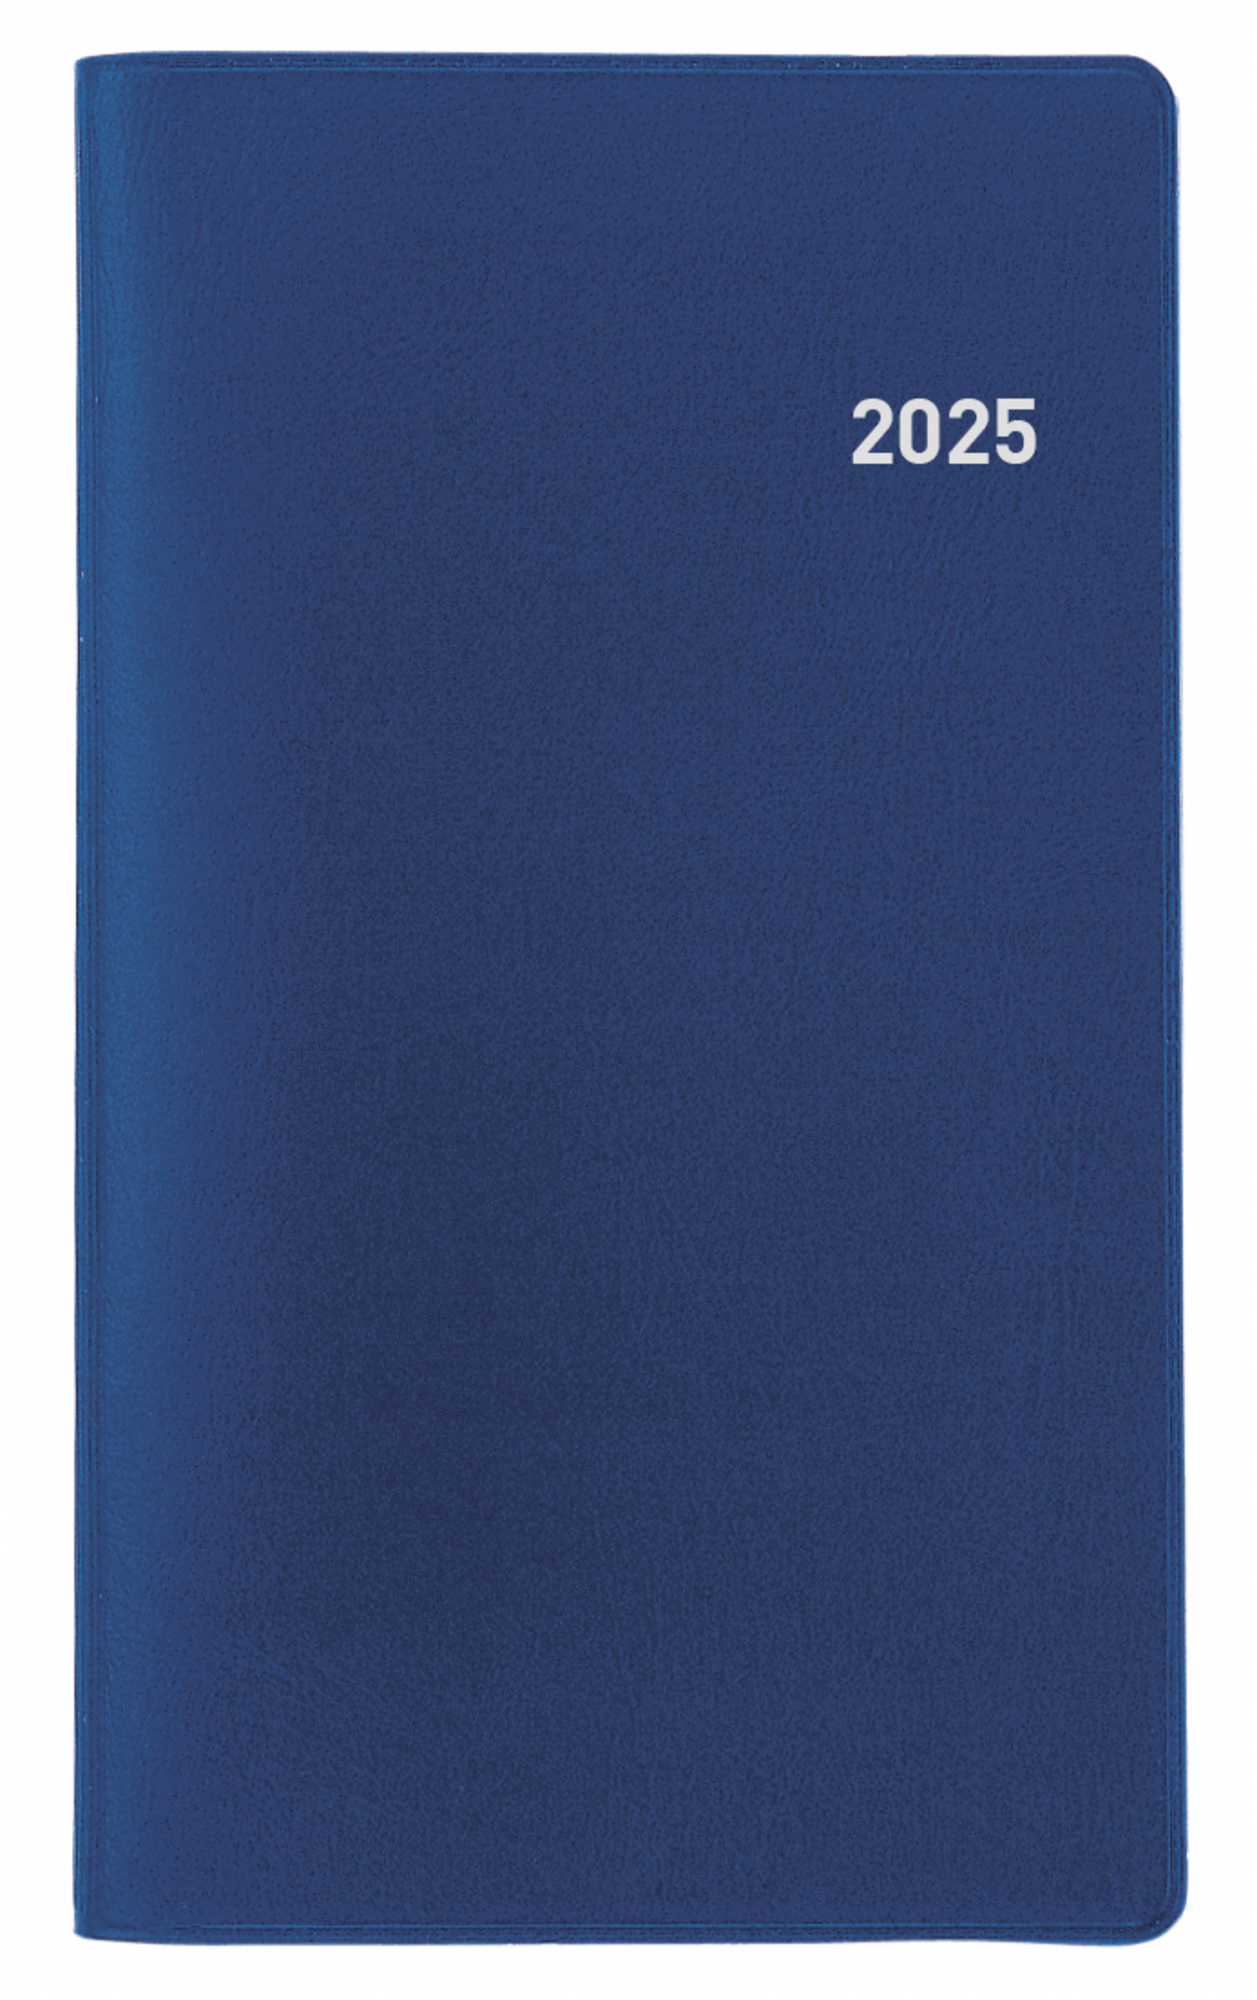 BIELLA Agenda Berlin 2025 851561050025 1M/1P bleu ML 8.7x15.3cm